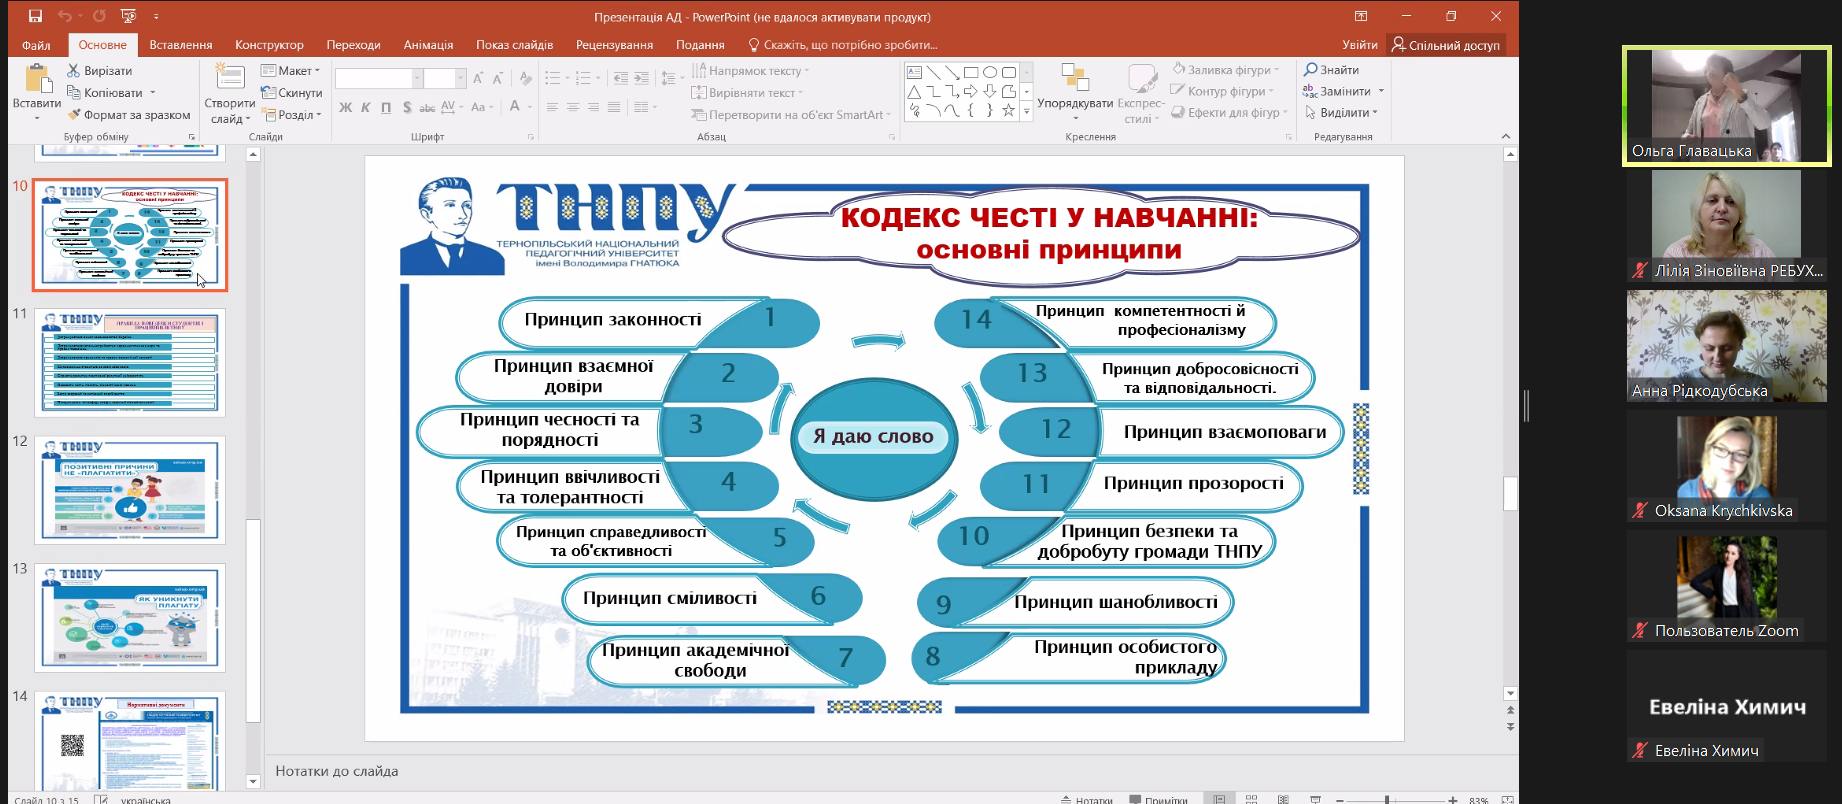 Інтегративна лекція за участю викладачів та студентів трьох закладів вищої освіти України